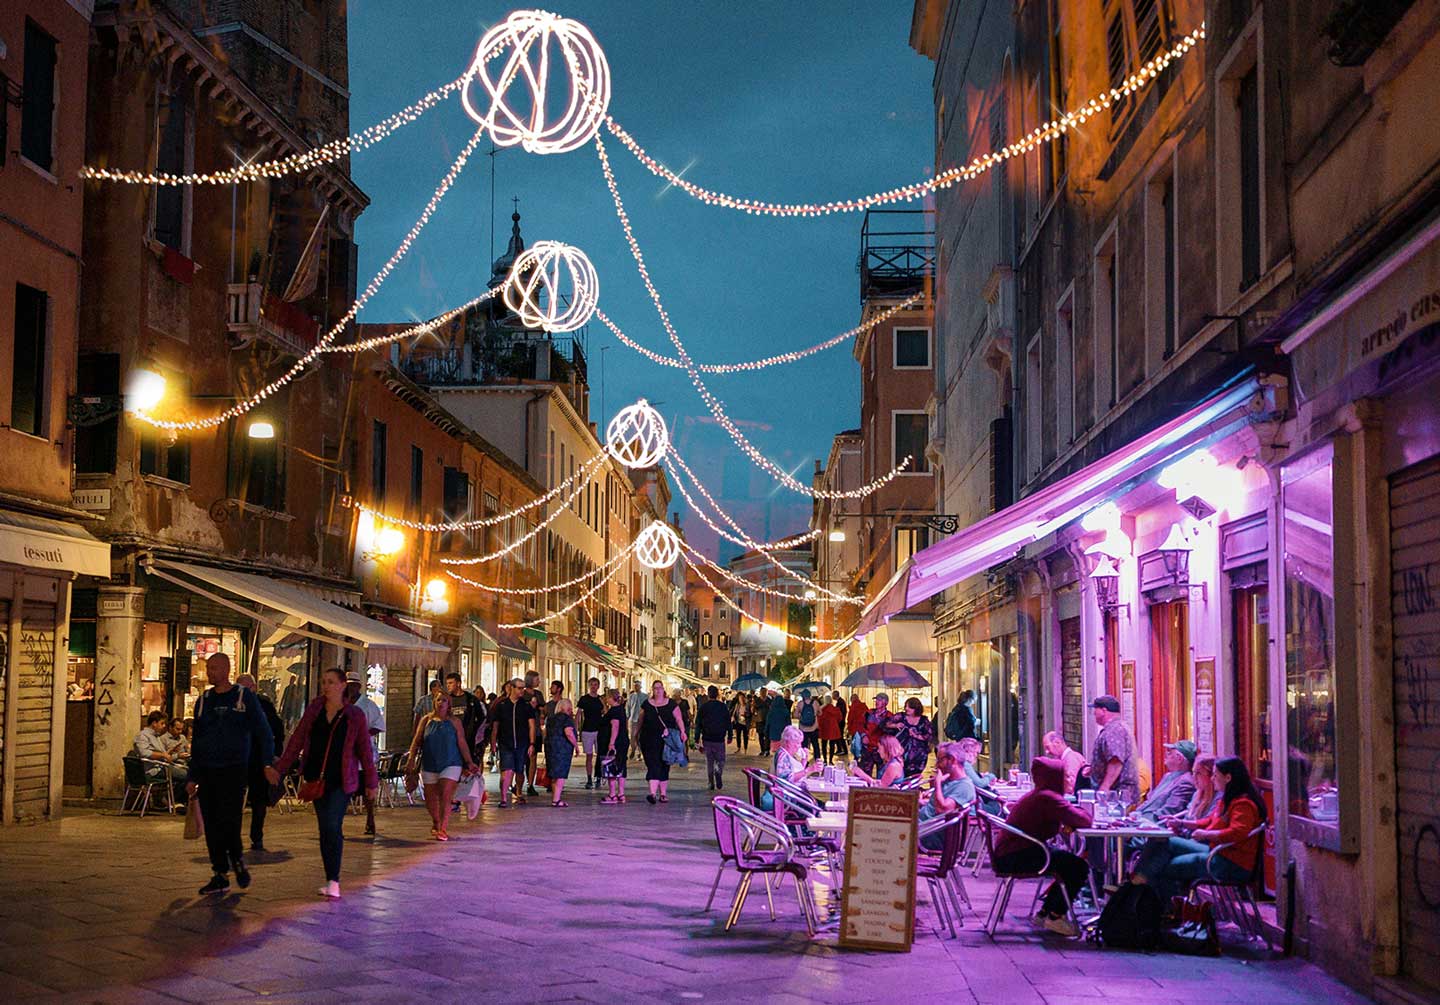 Illuminazione di una via cittadina con soggetti natalizia a forma di sfera